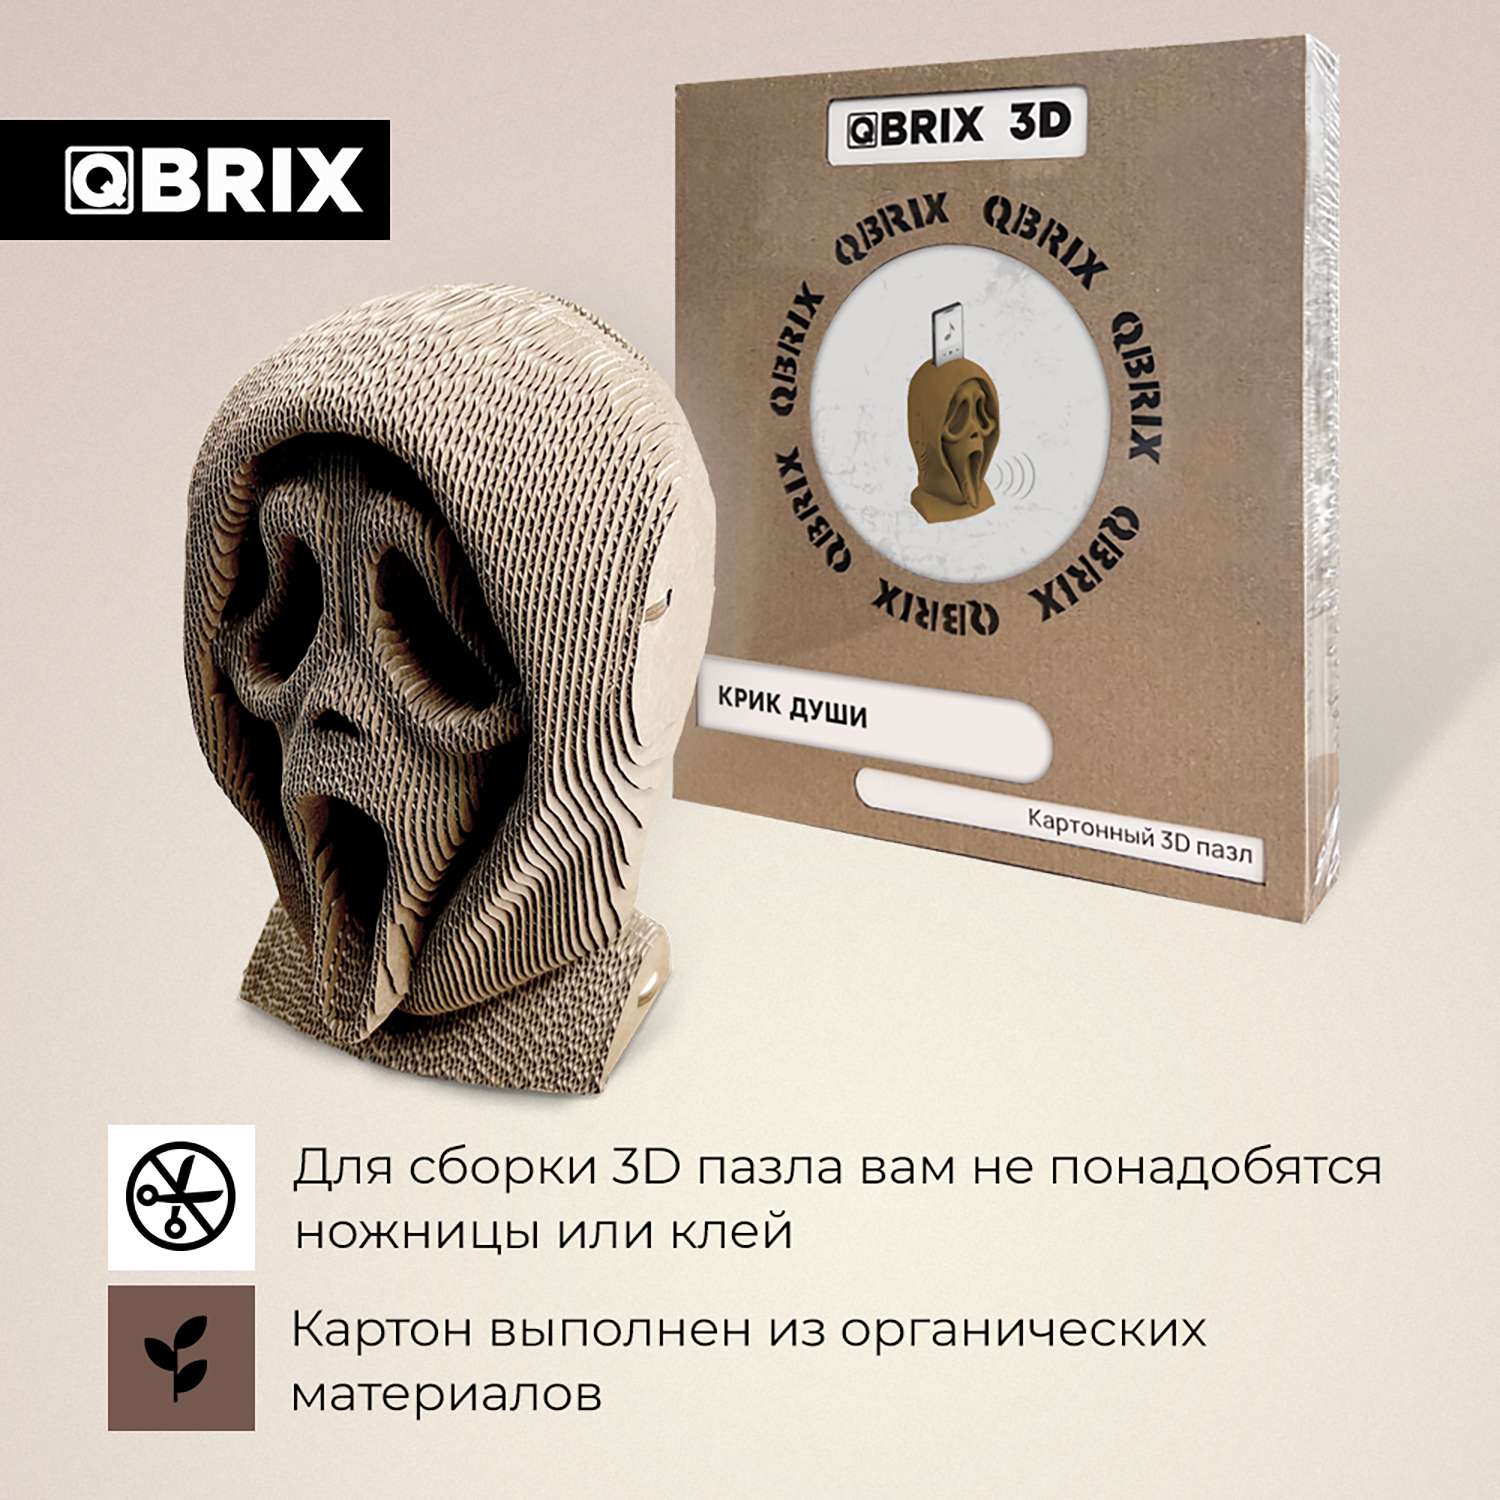 Конструктор QBRIX 3D картонный Крик души 20009 20009 - фото 4